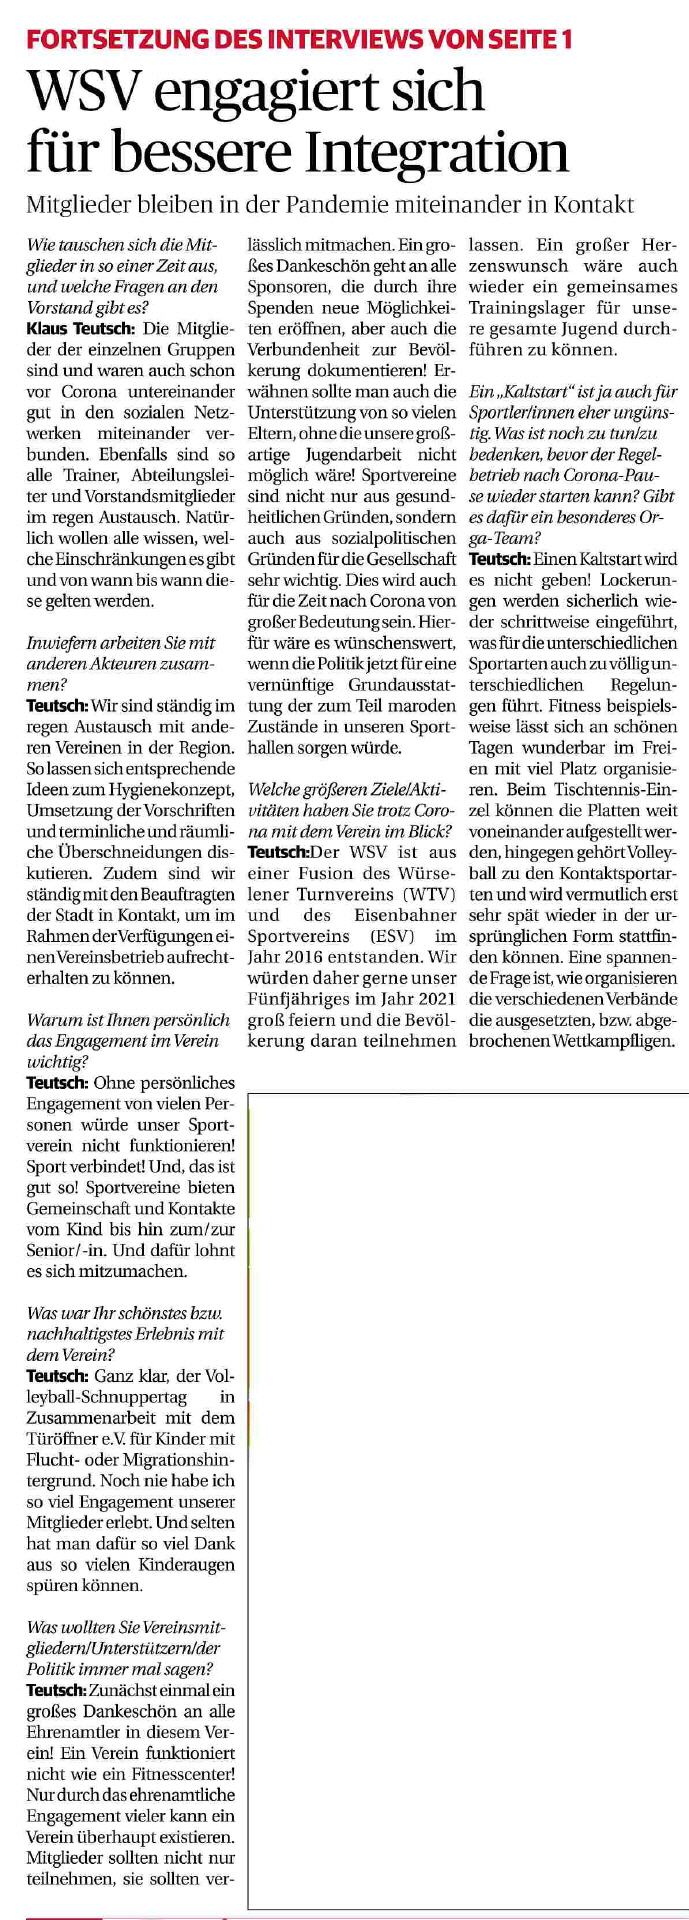 Aachener Zeitung am Sonntag, 27.12.2020